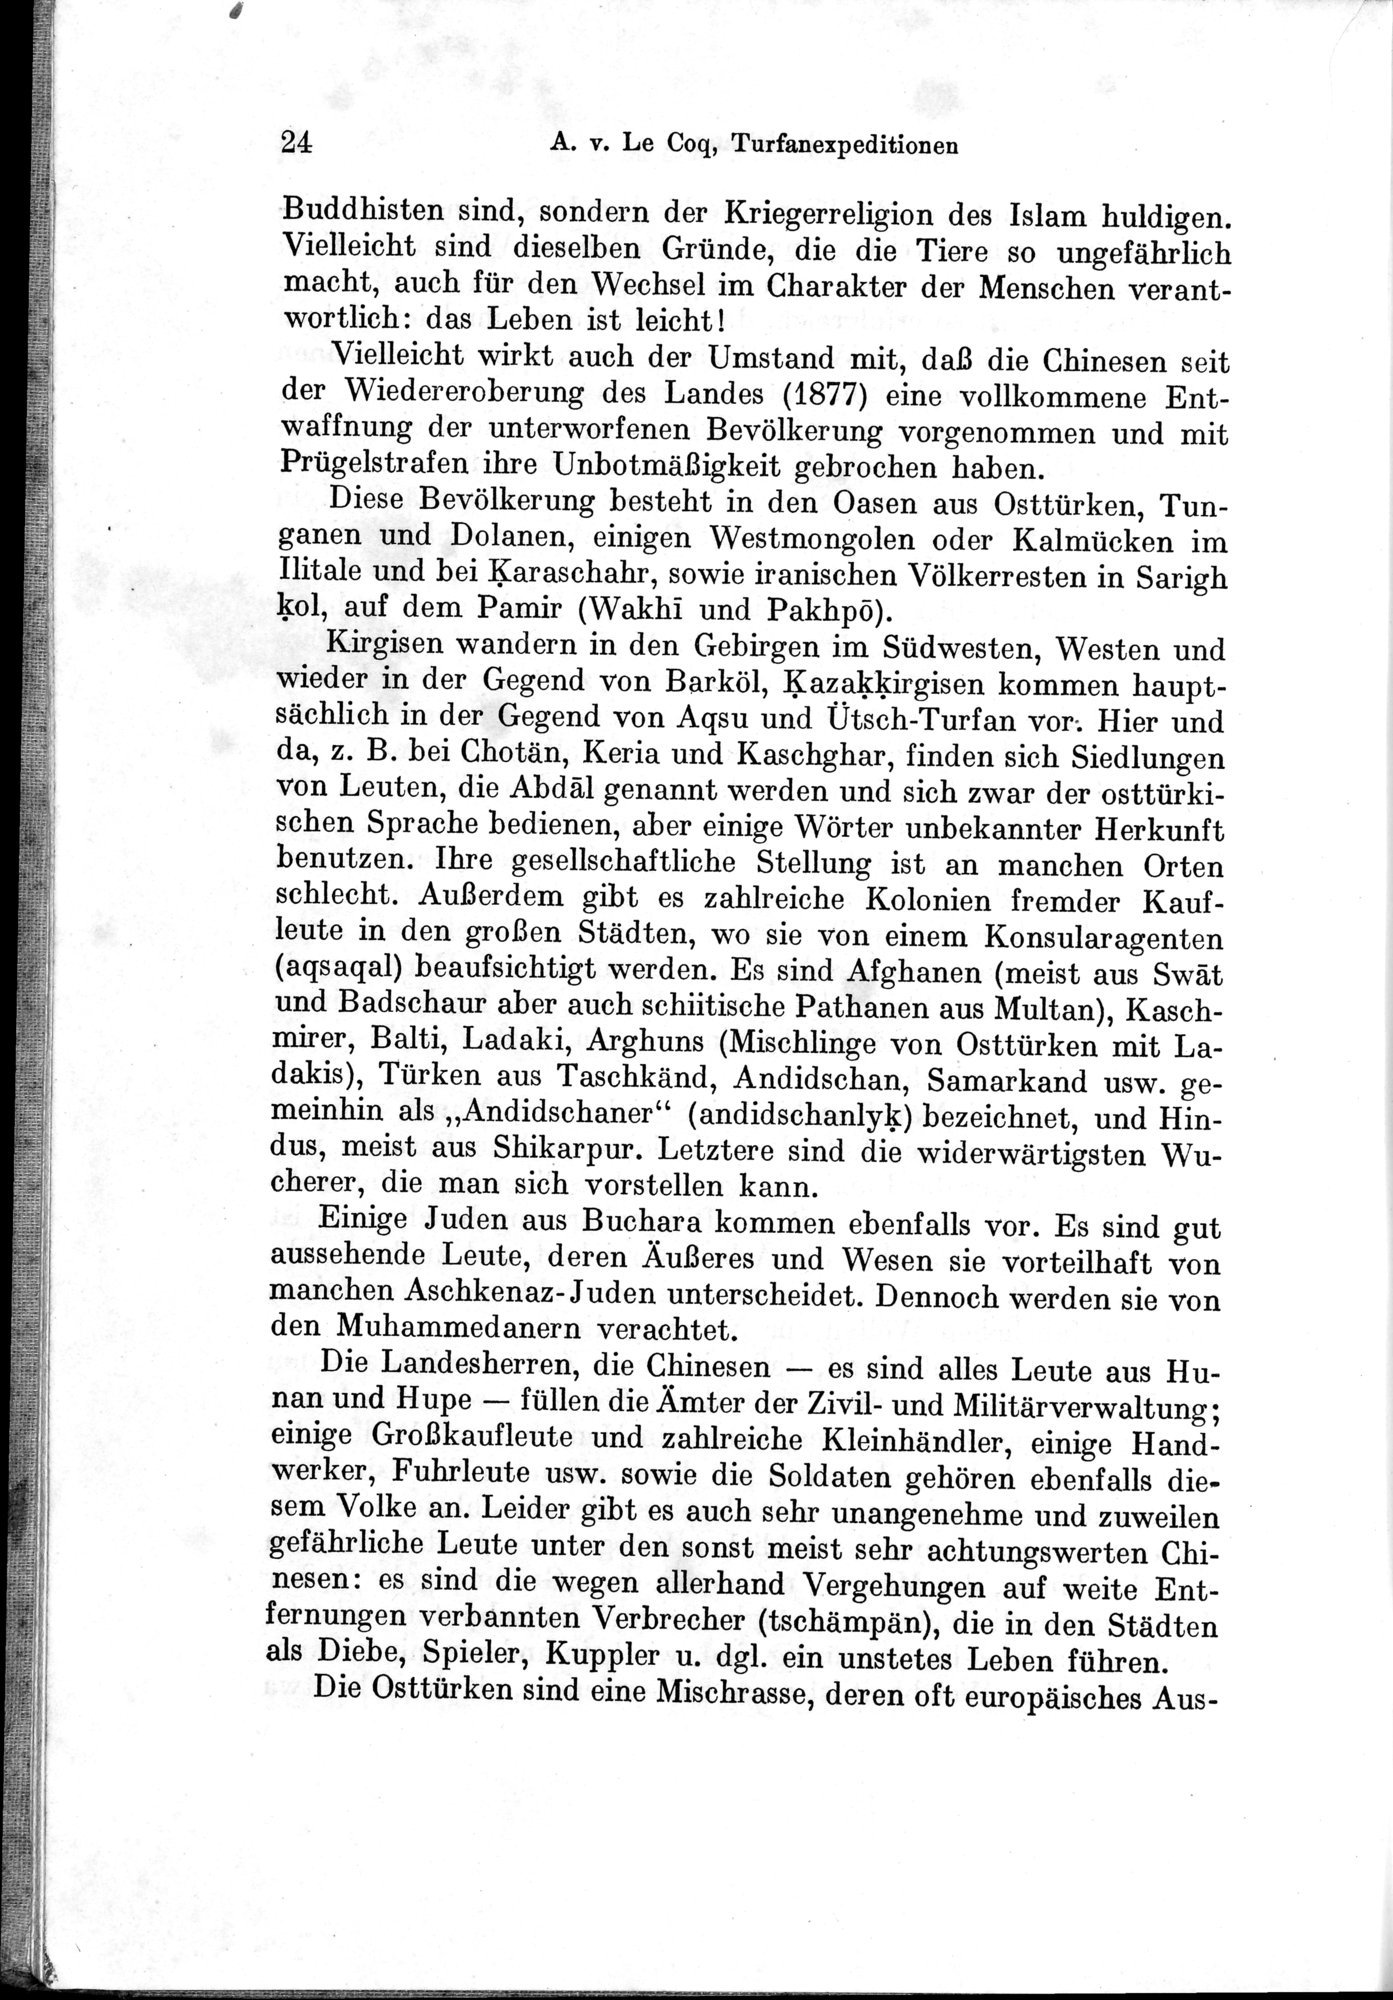 Auf Hellas Spuren in Ostturkistan : vol.1 / Page 40 (Grayscale High Resolution Image)